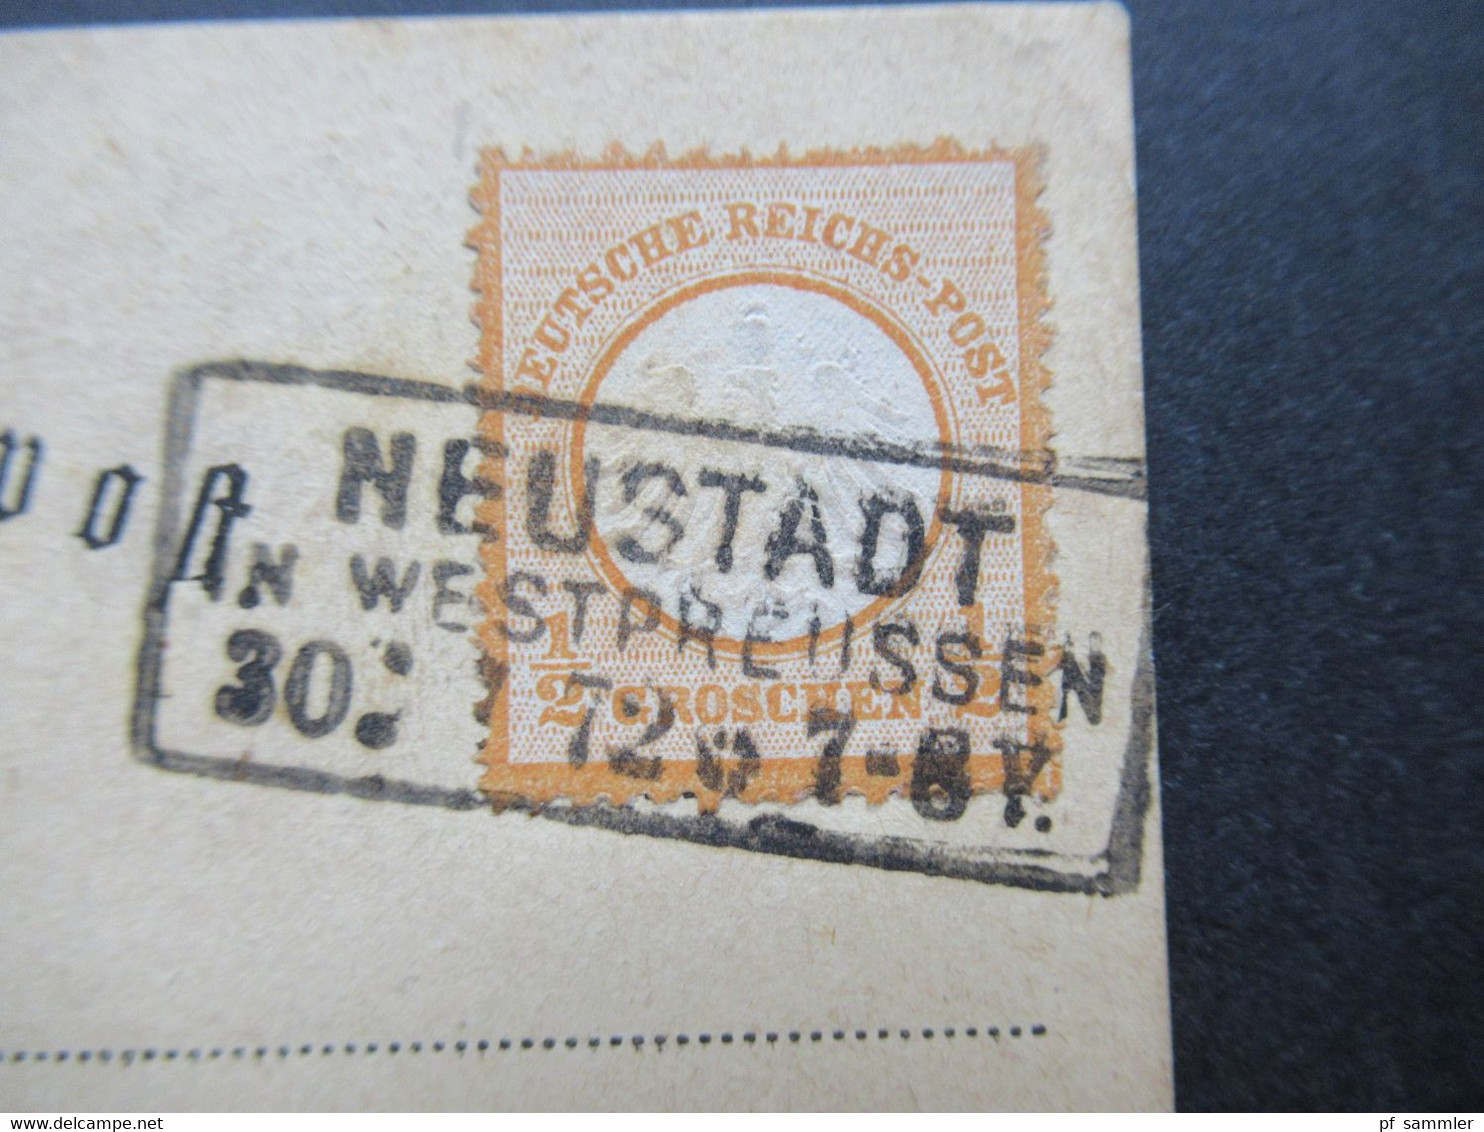 DR 30.7.1872 Brustschild Nr. 3 EF Auf Postkarte Stempel Ra3 Neustadt In Westpreussen Nach Gotha Gesendet - Covers & Documents